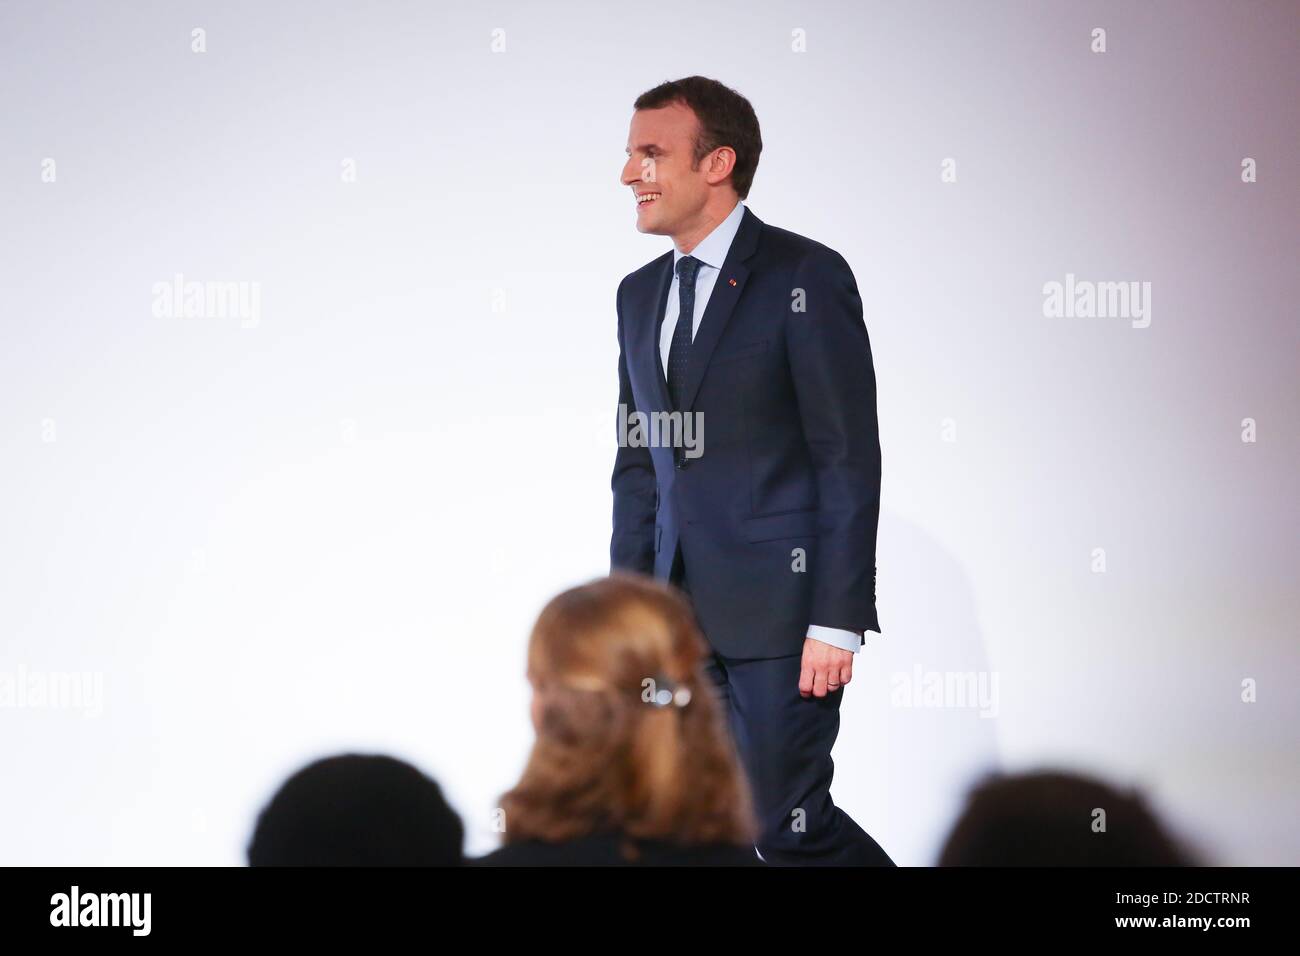 Le président français Emmanuel Macron s'exprime au palais présidentiel de l'Elysée le 13 avril 2018 à Paris lors d'une cérémonie de remise de prix réunissant des athlètes français qui ont participé aux Jeux olympiques d'hiver de Pyeongchang en 2018. Photo de Hamilton/pool/ABACAPRESS.COM Banque D'Images